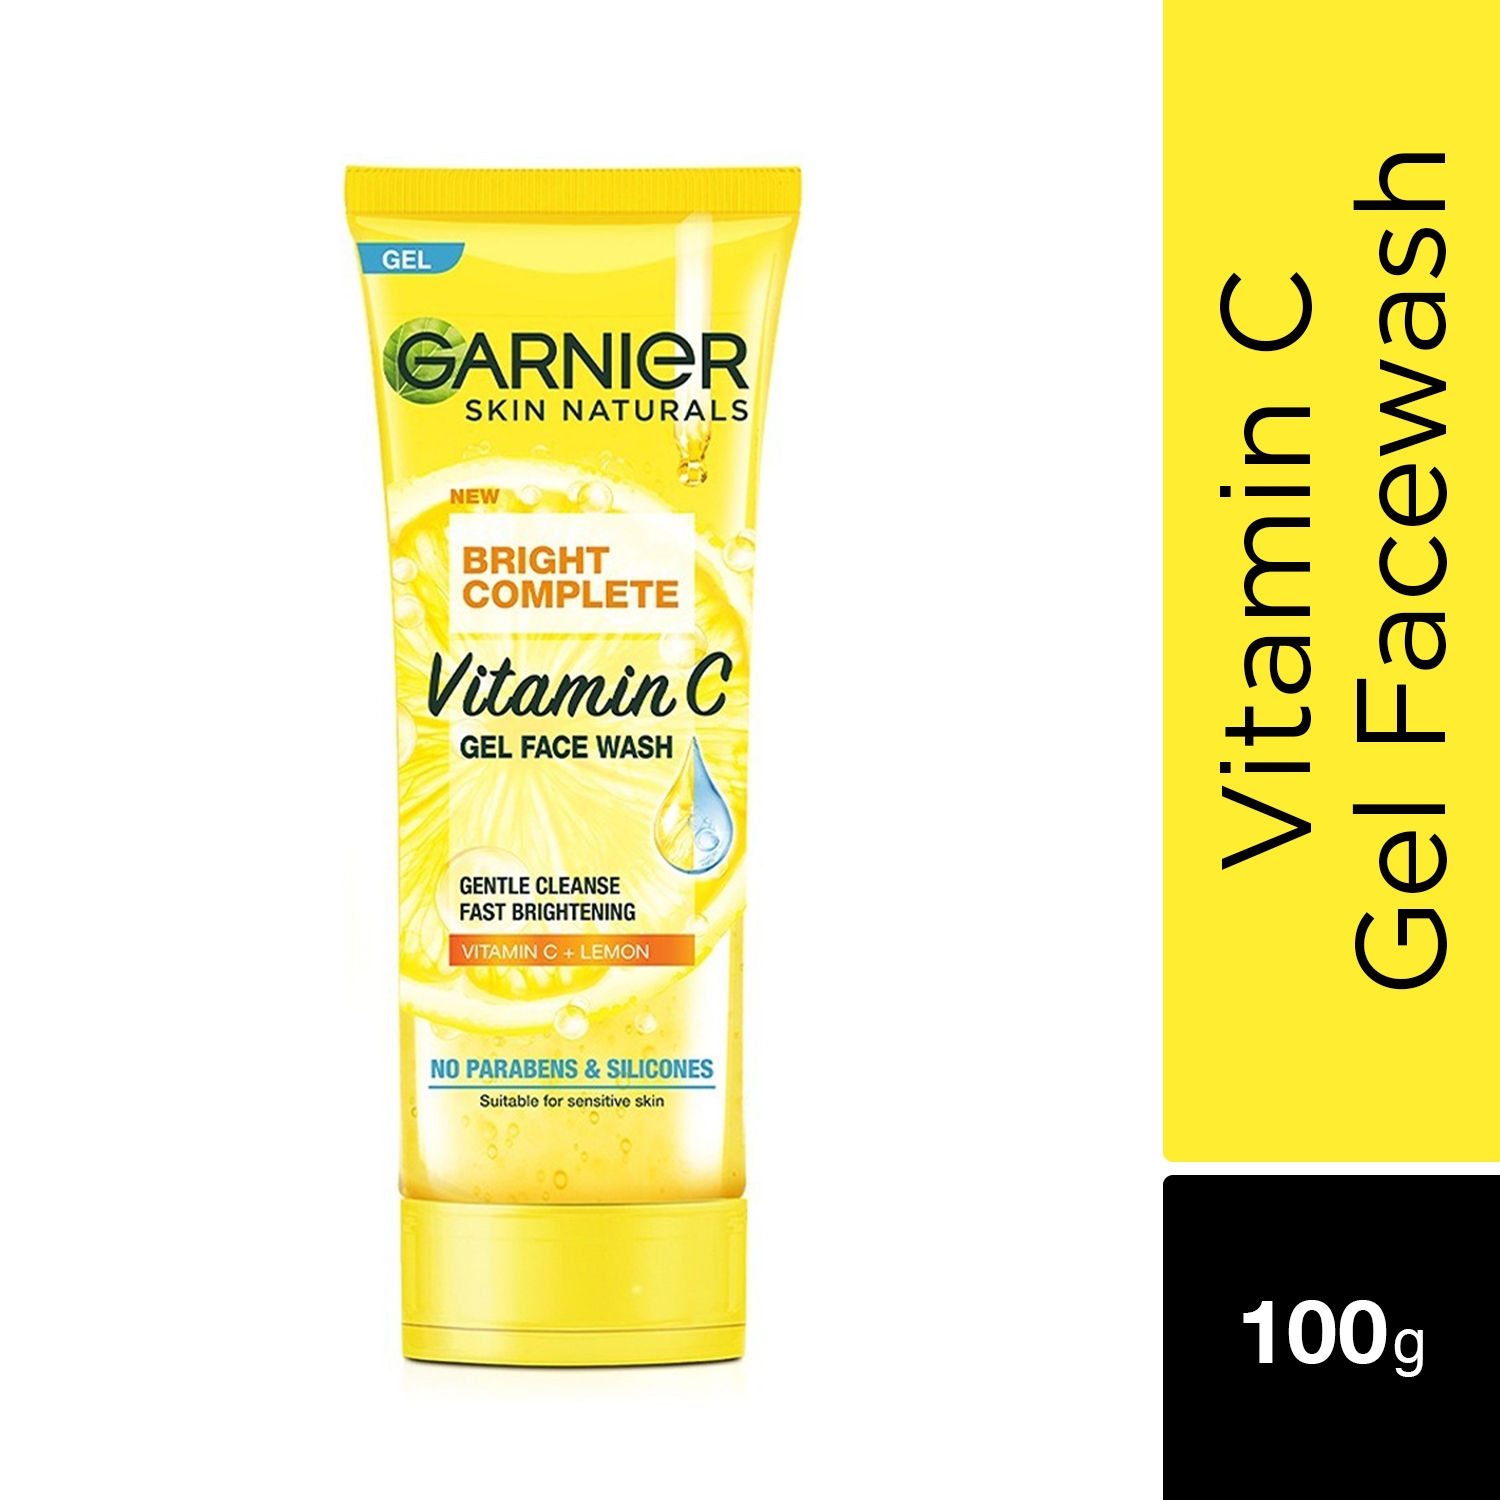 Garnier | Garnier Bright Complete Vitamin C Gel Face Wash (100g)